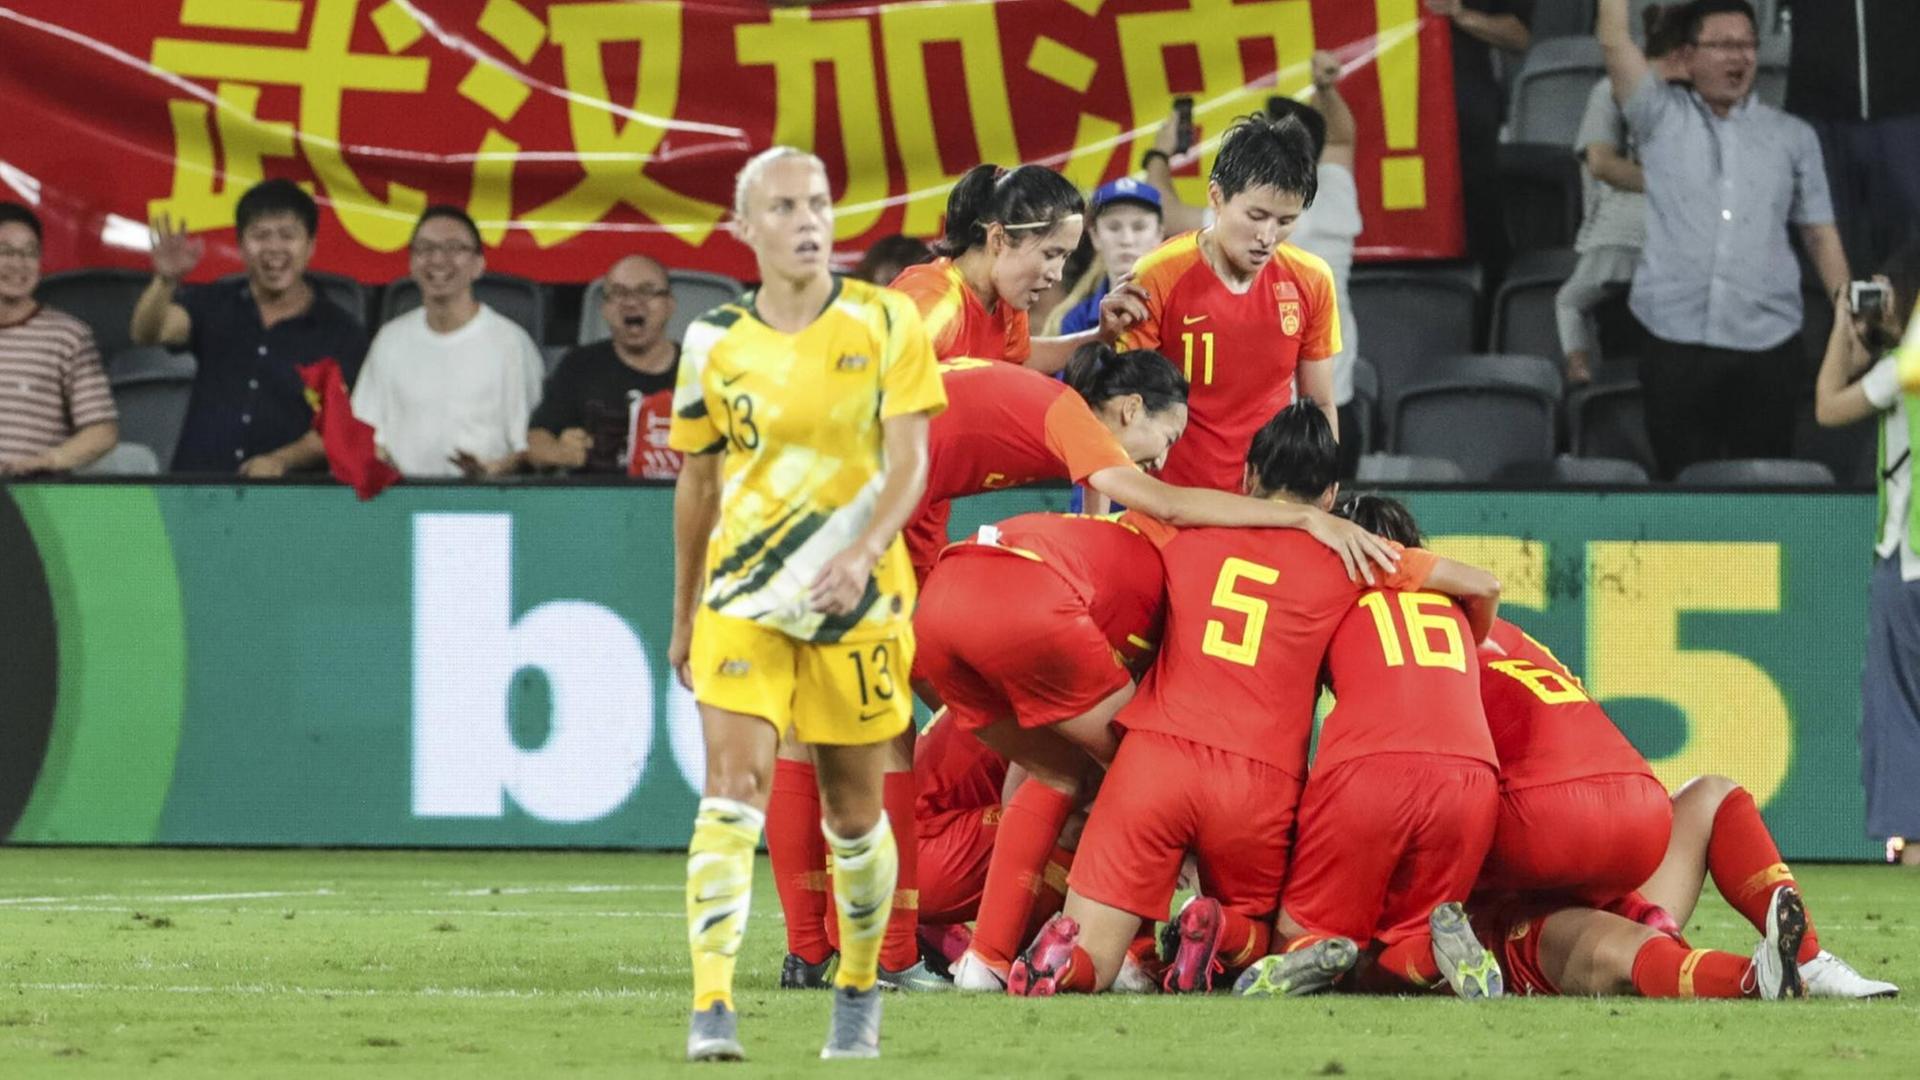 Die chinesische Fußballolympiamannschaft feiert ein Tor gegen Australien. Im Hintergrund chinesische Fans mit einem Transparent in Rot mit gelber Schrift.